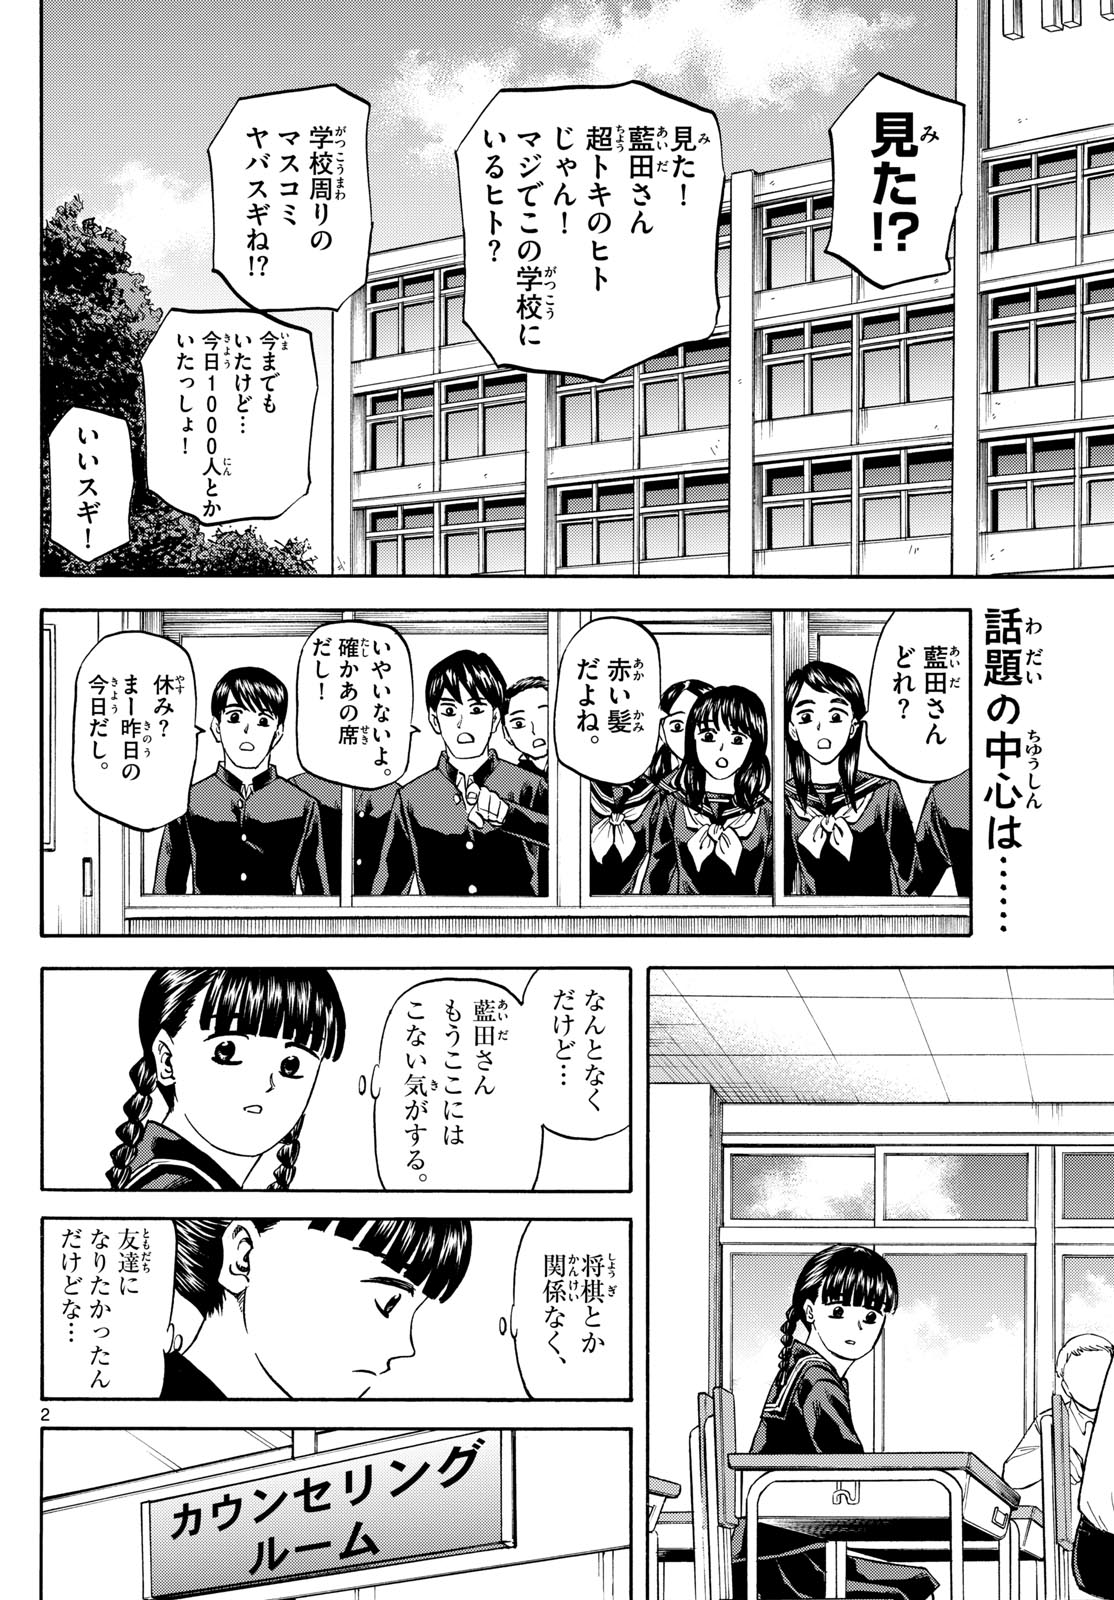 Tatsu to Ichigo - Chapter 171 - Page 2